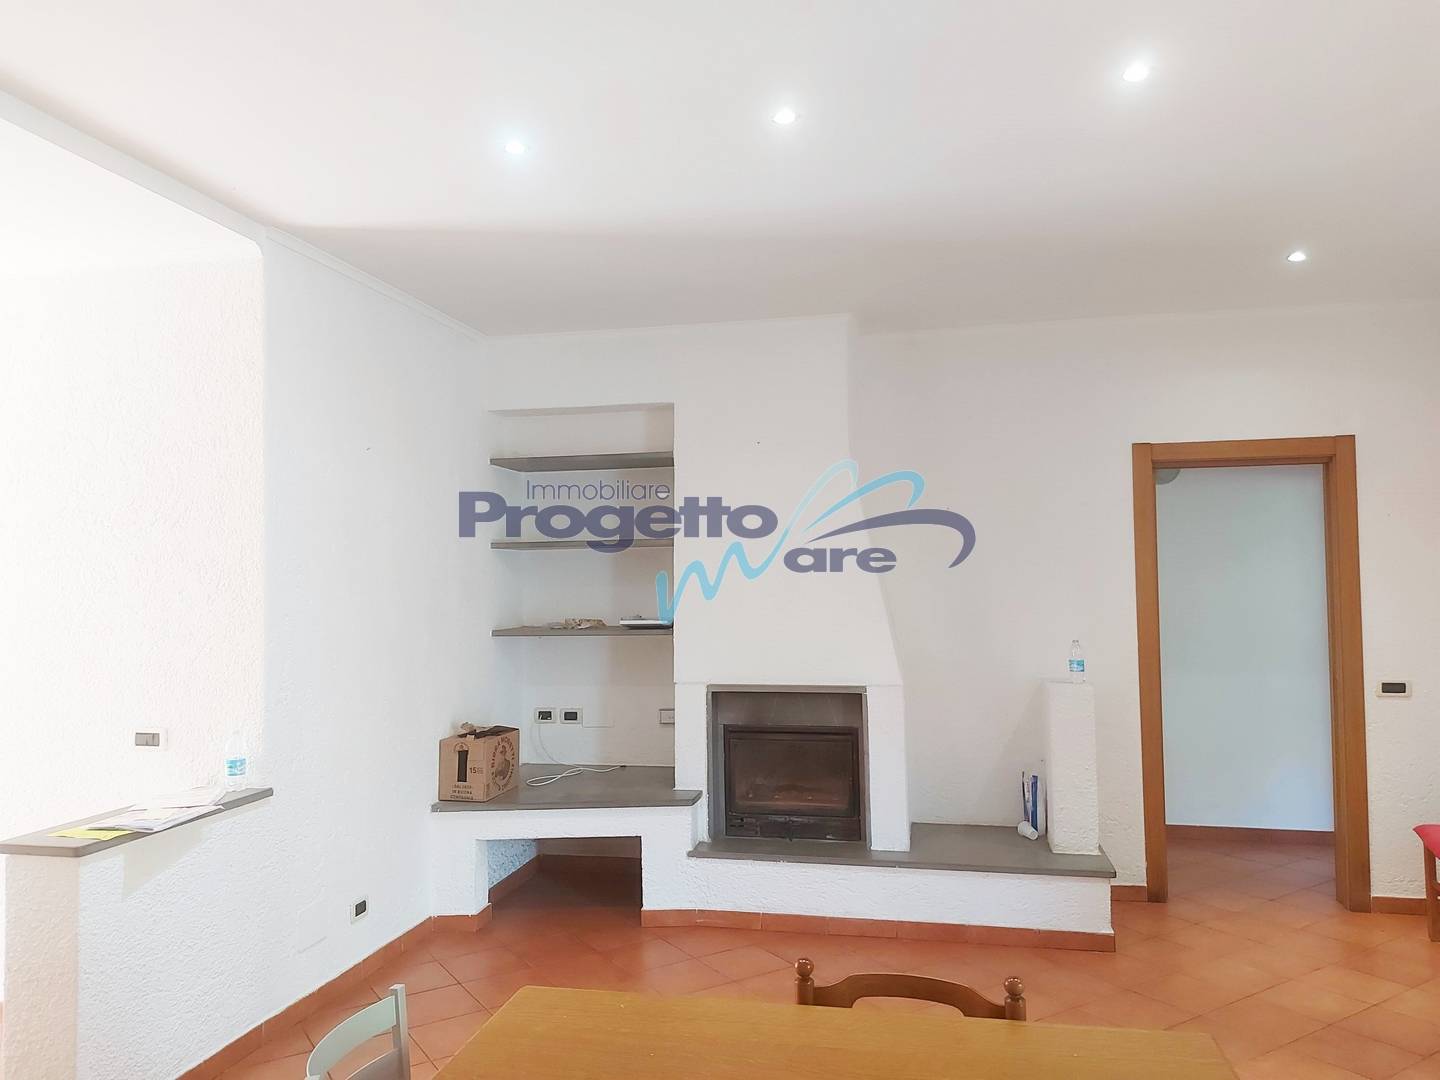 Appartamento in vendita a Tovo San Giacomo, 4 locali, prezzo € 215.000 | PortaleAgenzieImmobiliari.it